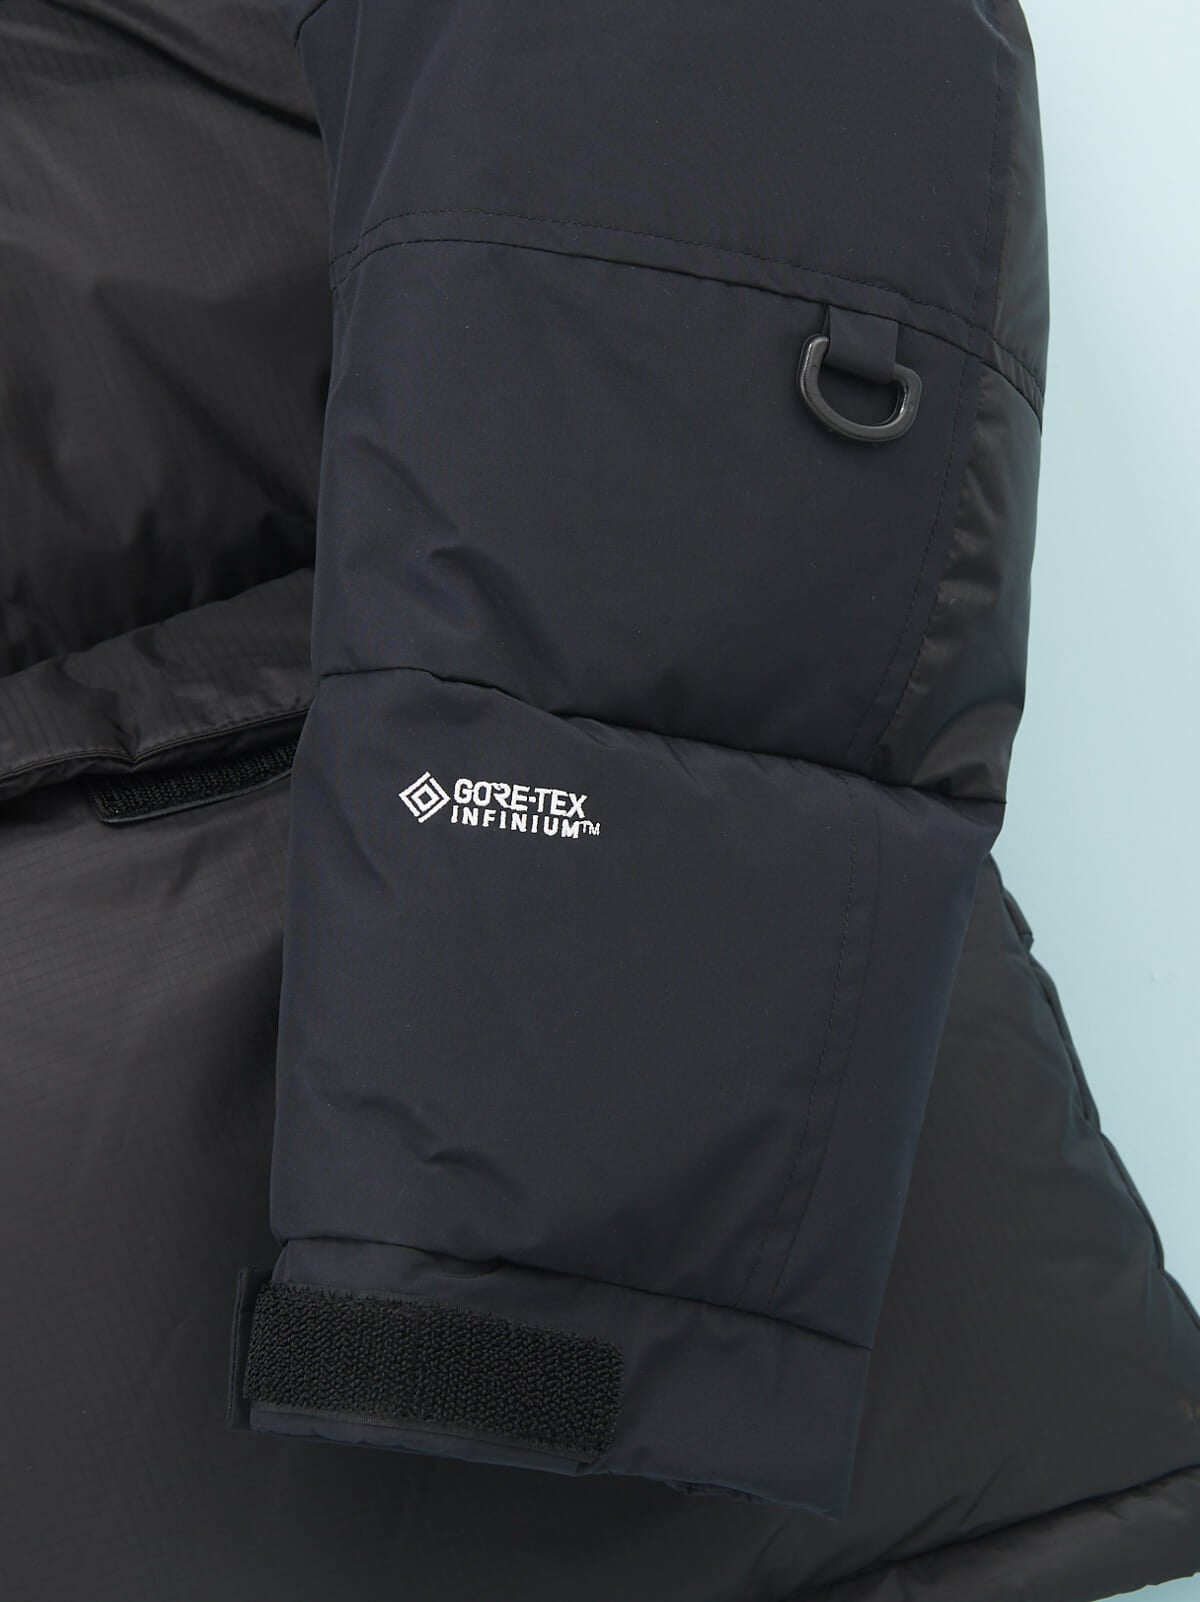 「ザ・ノース・フェイス」の23年冬の新作黒ダウンジャケット「ヒムダウンパーカ」の袖のゴアテックスロゴ